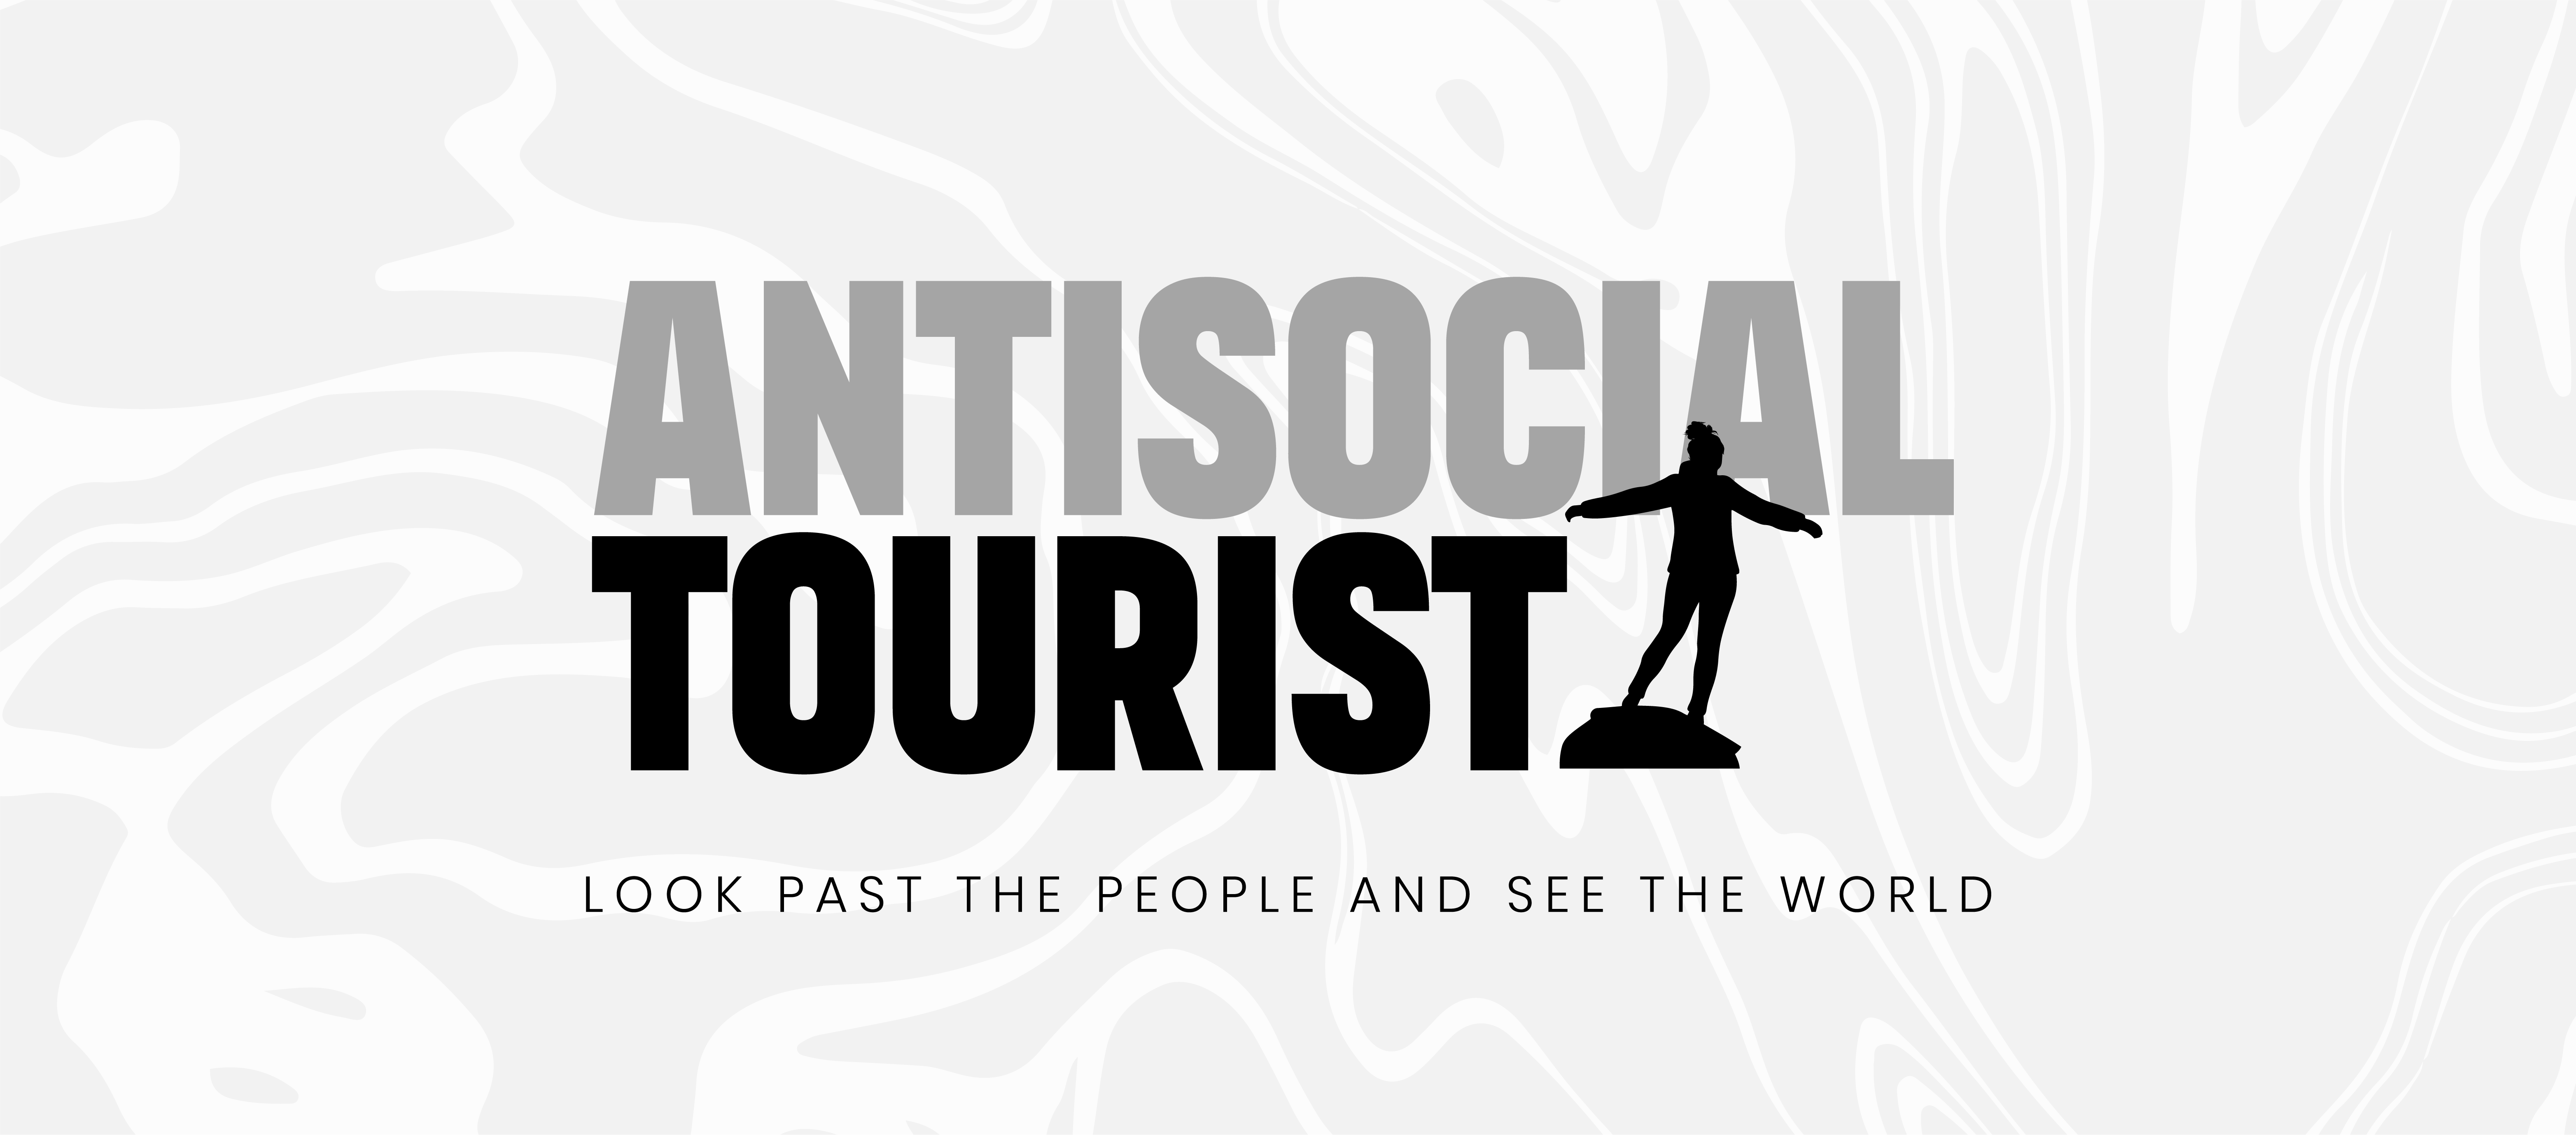 Antisocial Tourist